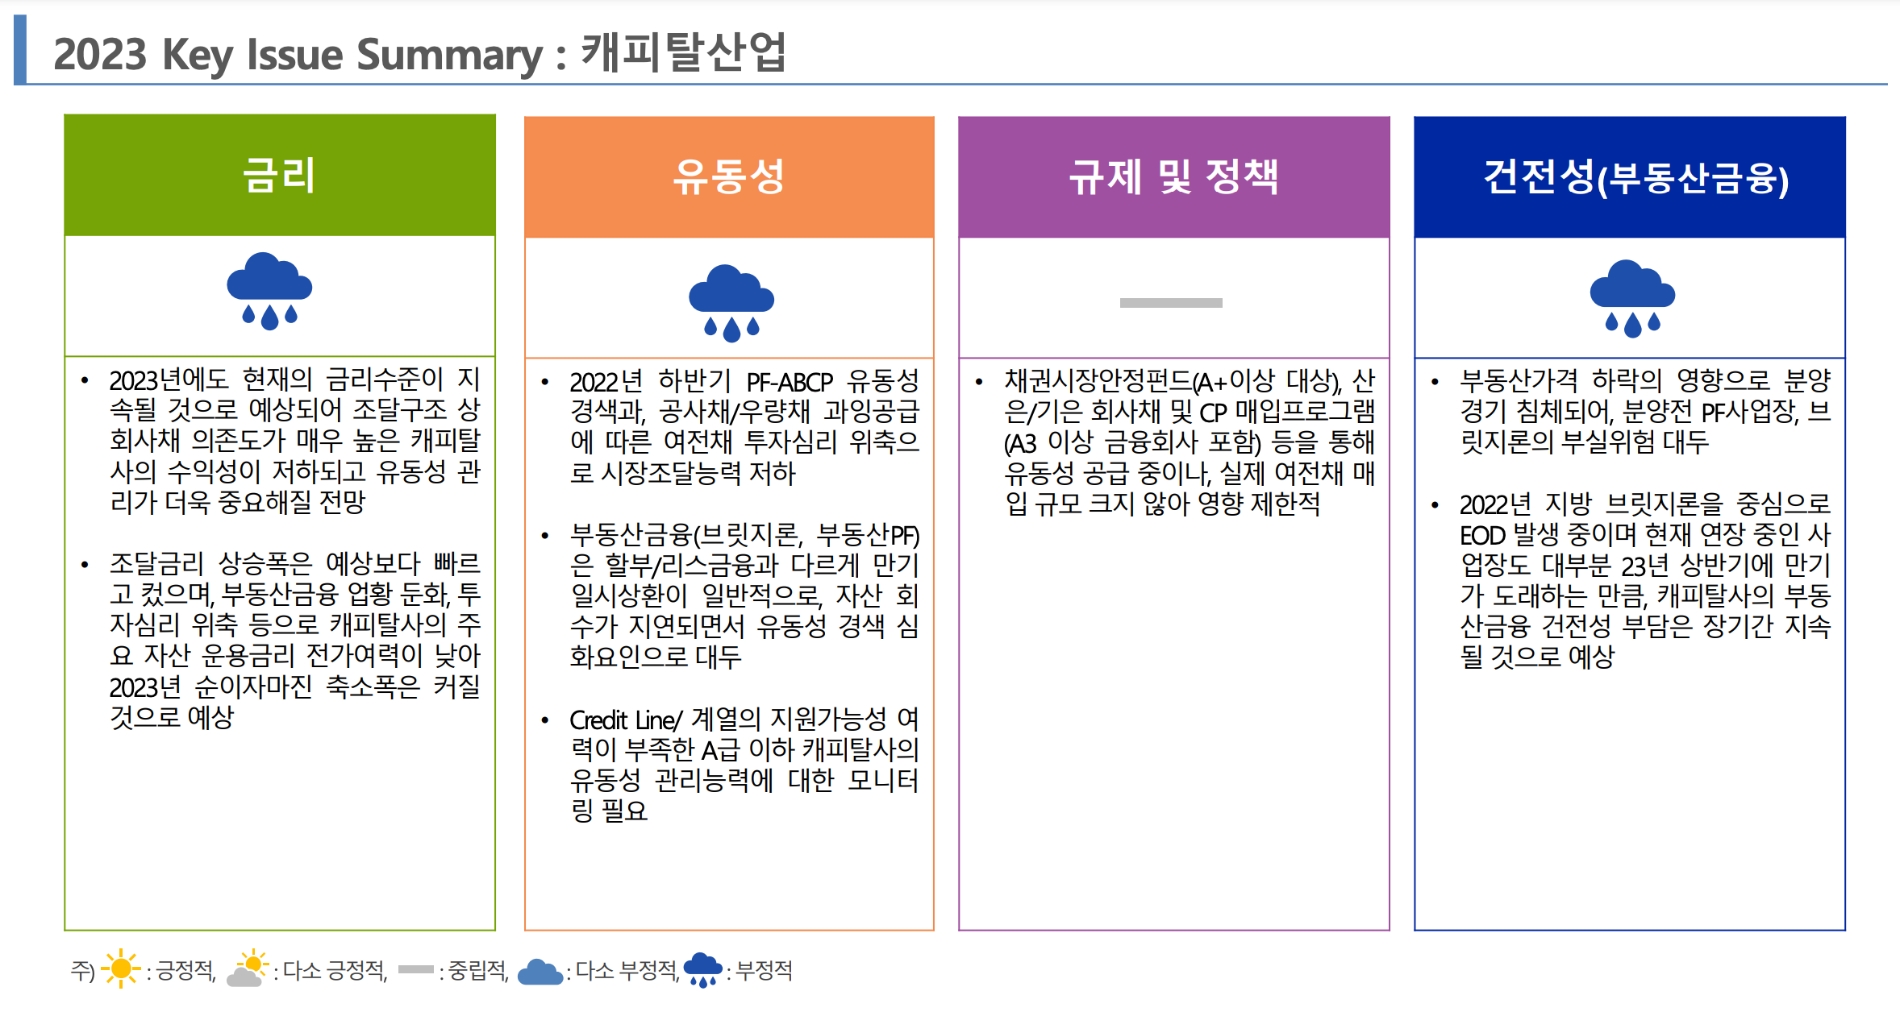 2023년 캐피탈 산업 주요 전망 지표. /자료제공=한국신용평가